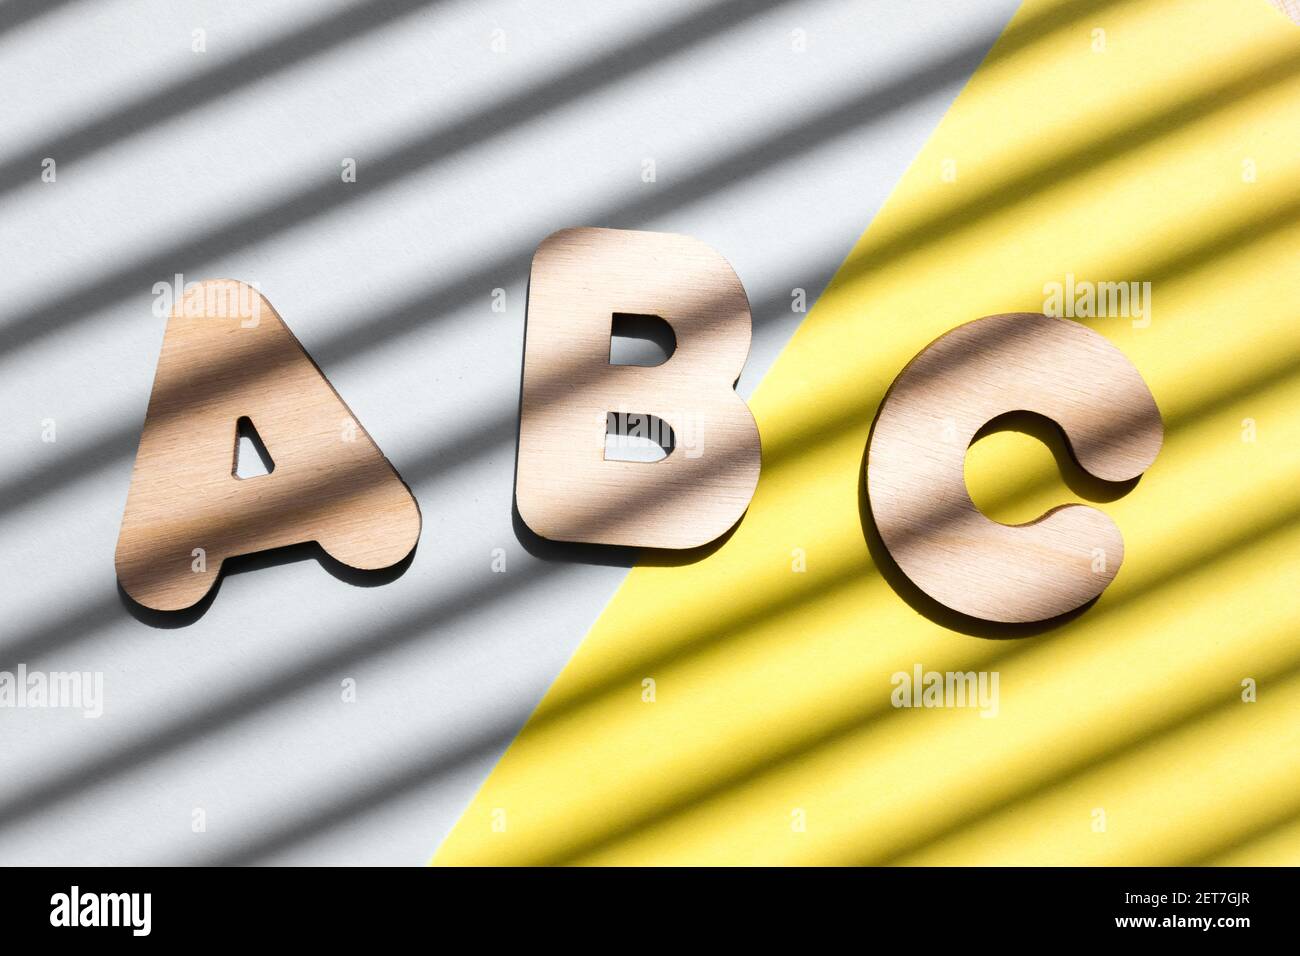 Lettere in legno ABC su sfondo blu e giallo. Il concetto dell'importanza dell'istruzione. Sfondo con ombre diagonali. Foto Stock